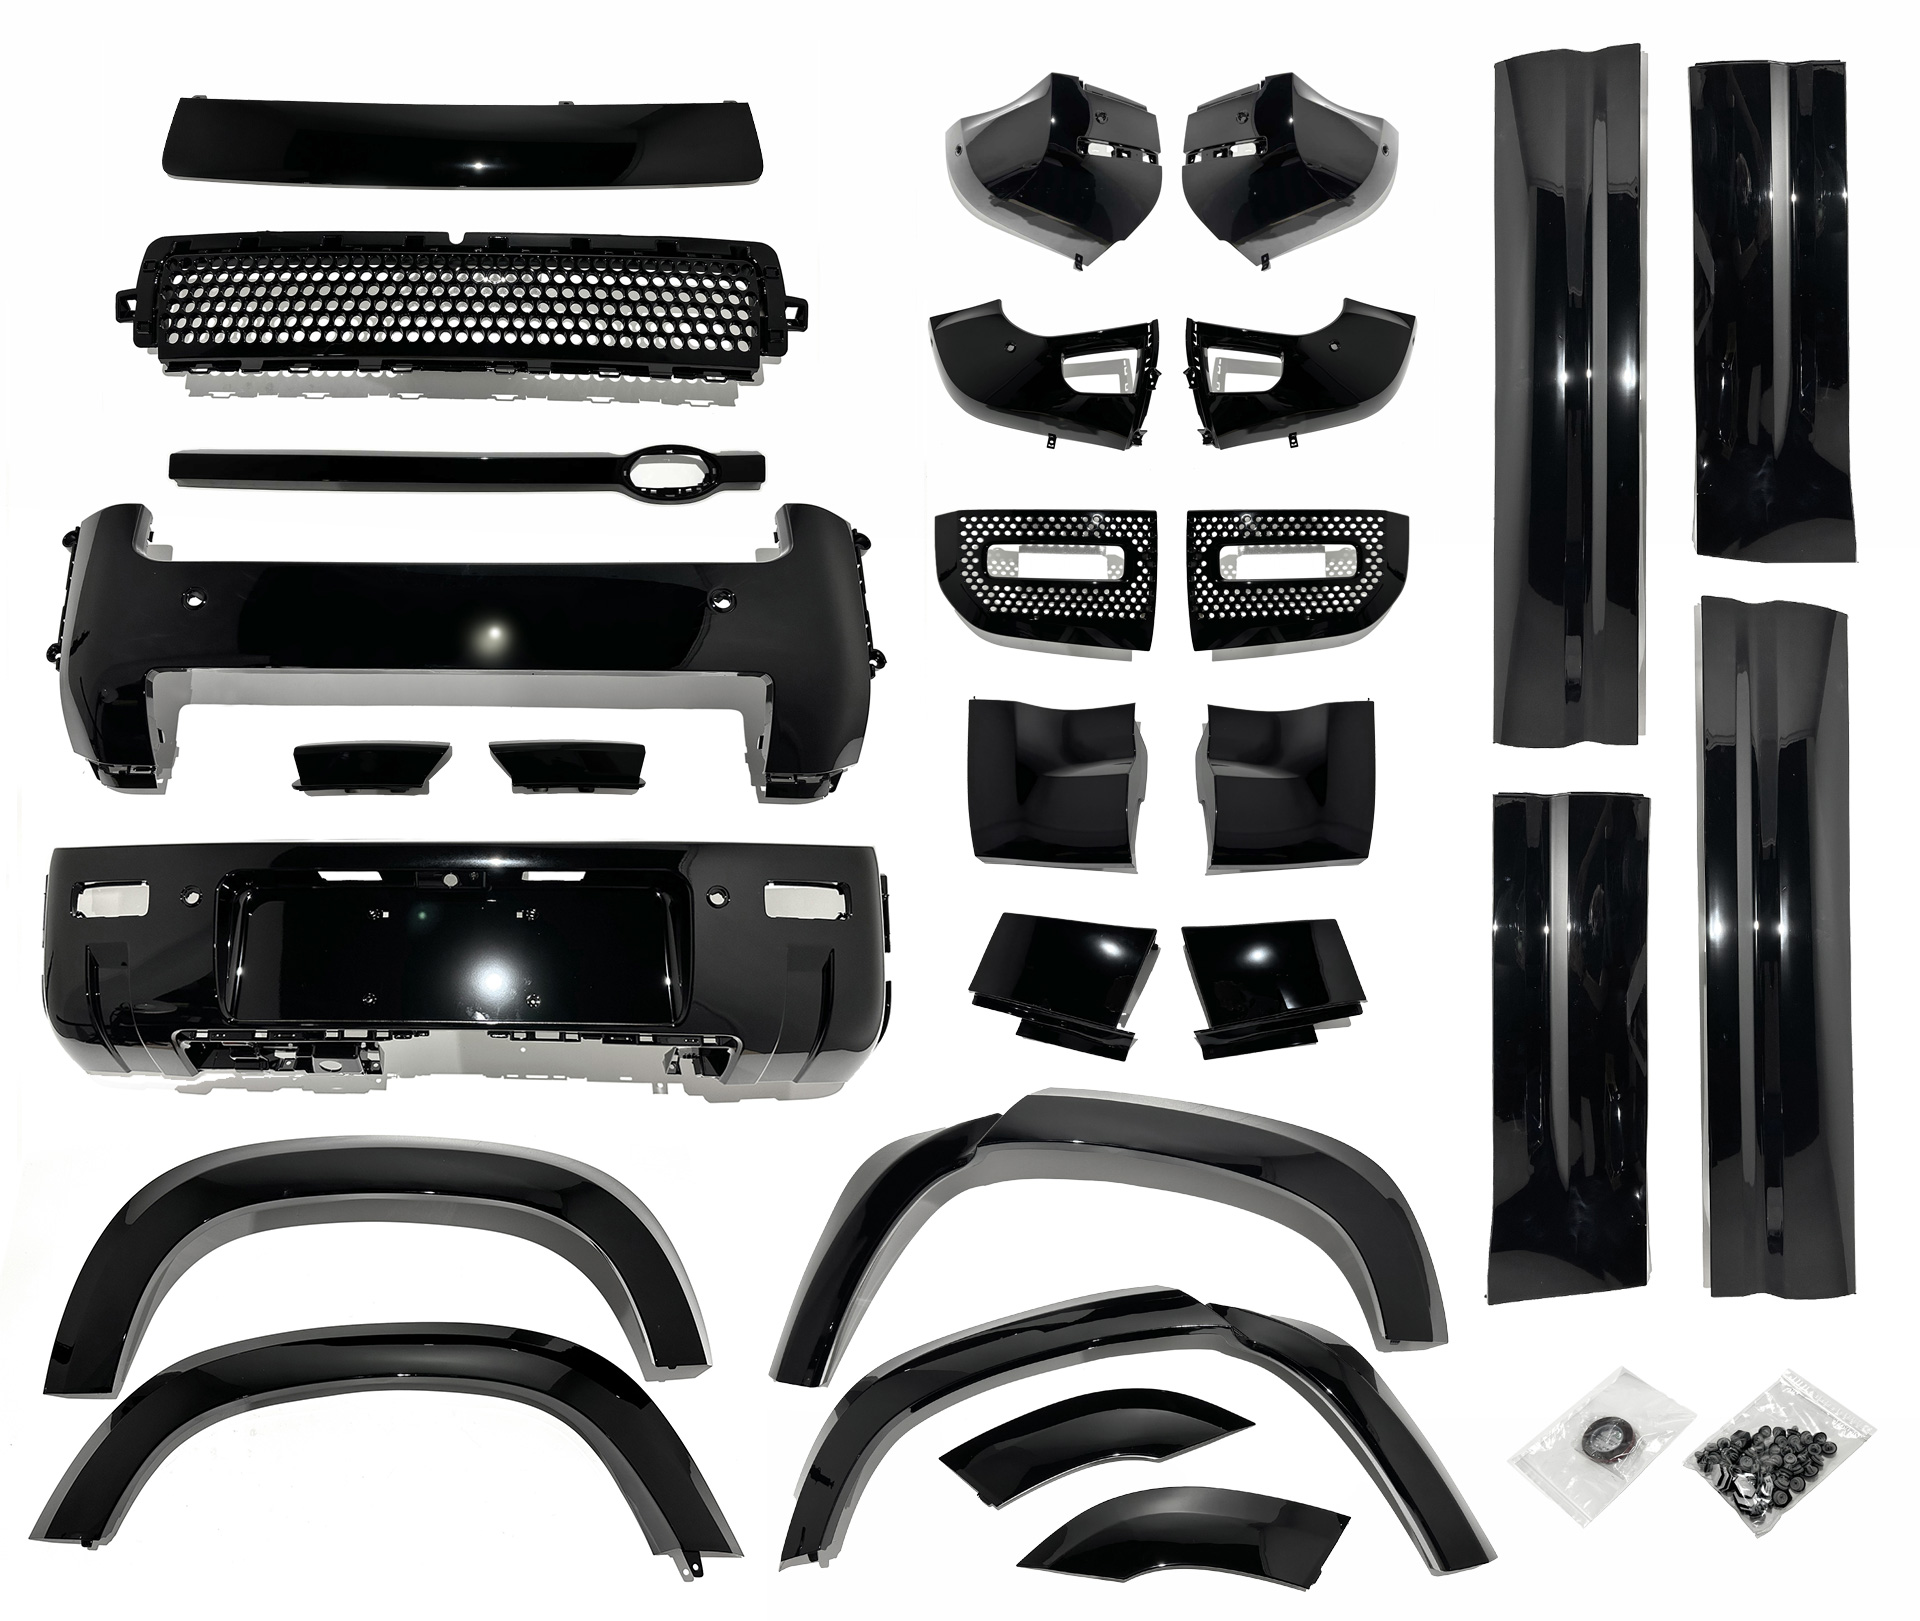 HAWKE Black Pack Styling Kit Upgrade fits Land Rover Defender 110 2020+ Upgrade